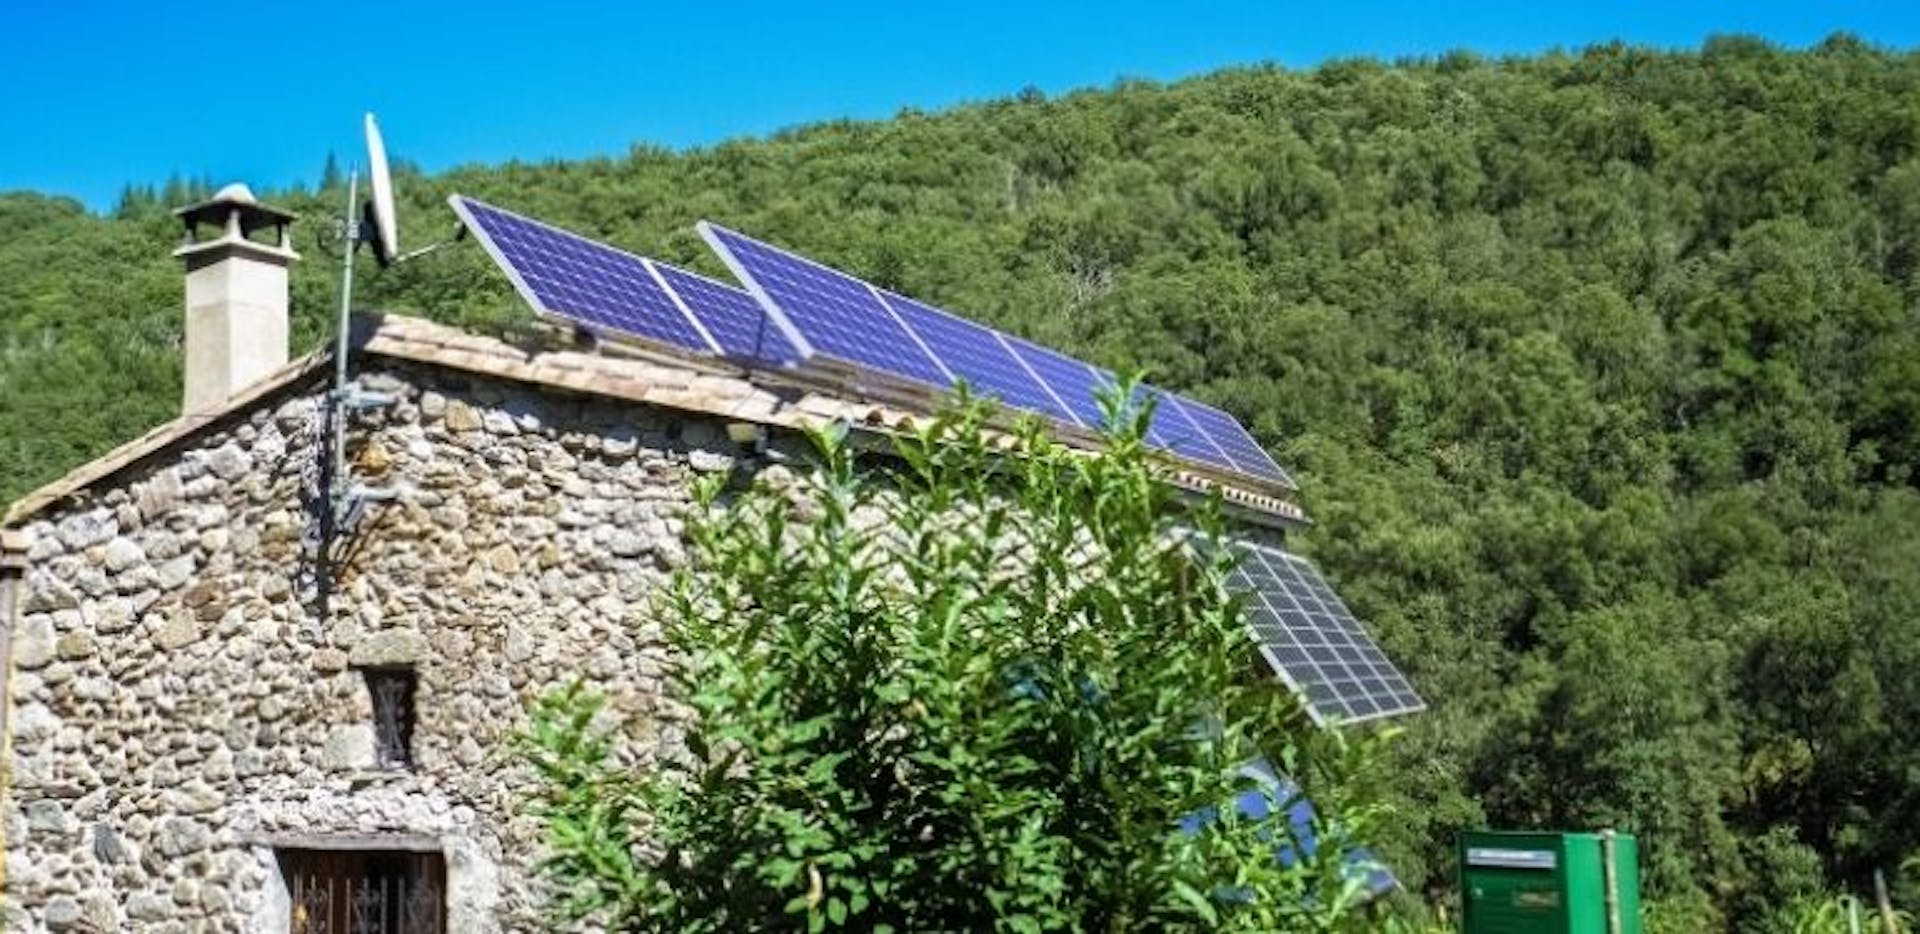 Maison avec des panneaux solaires